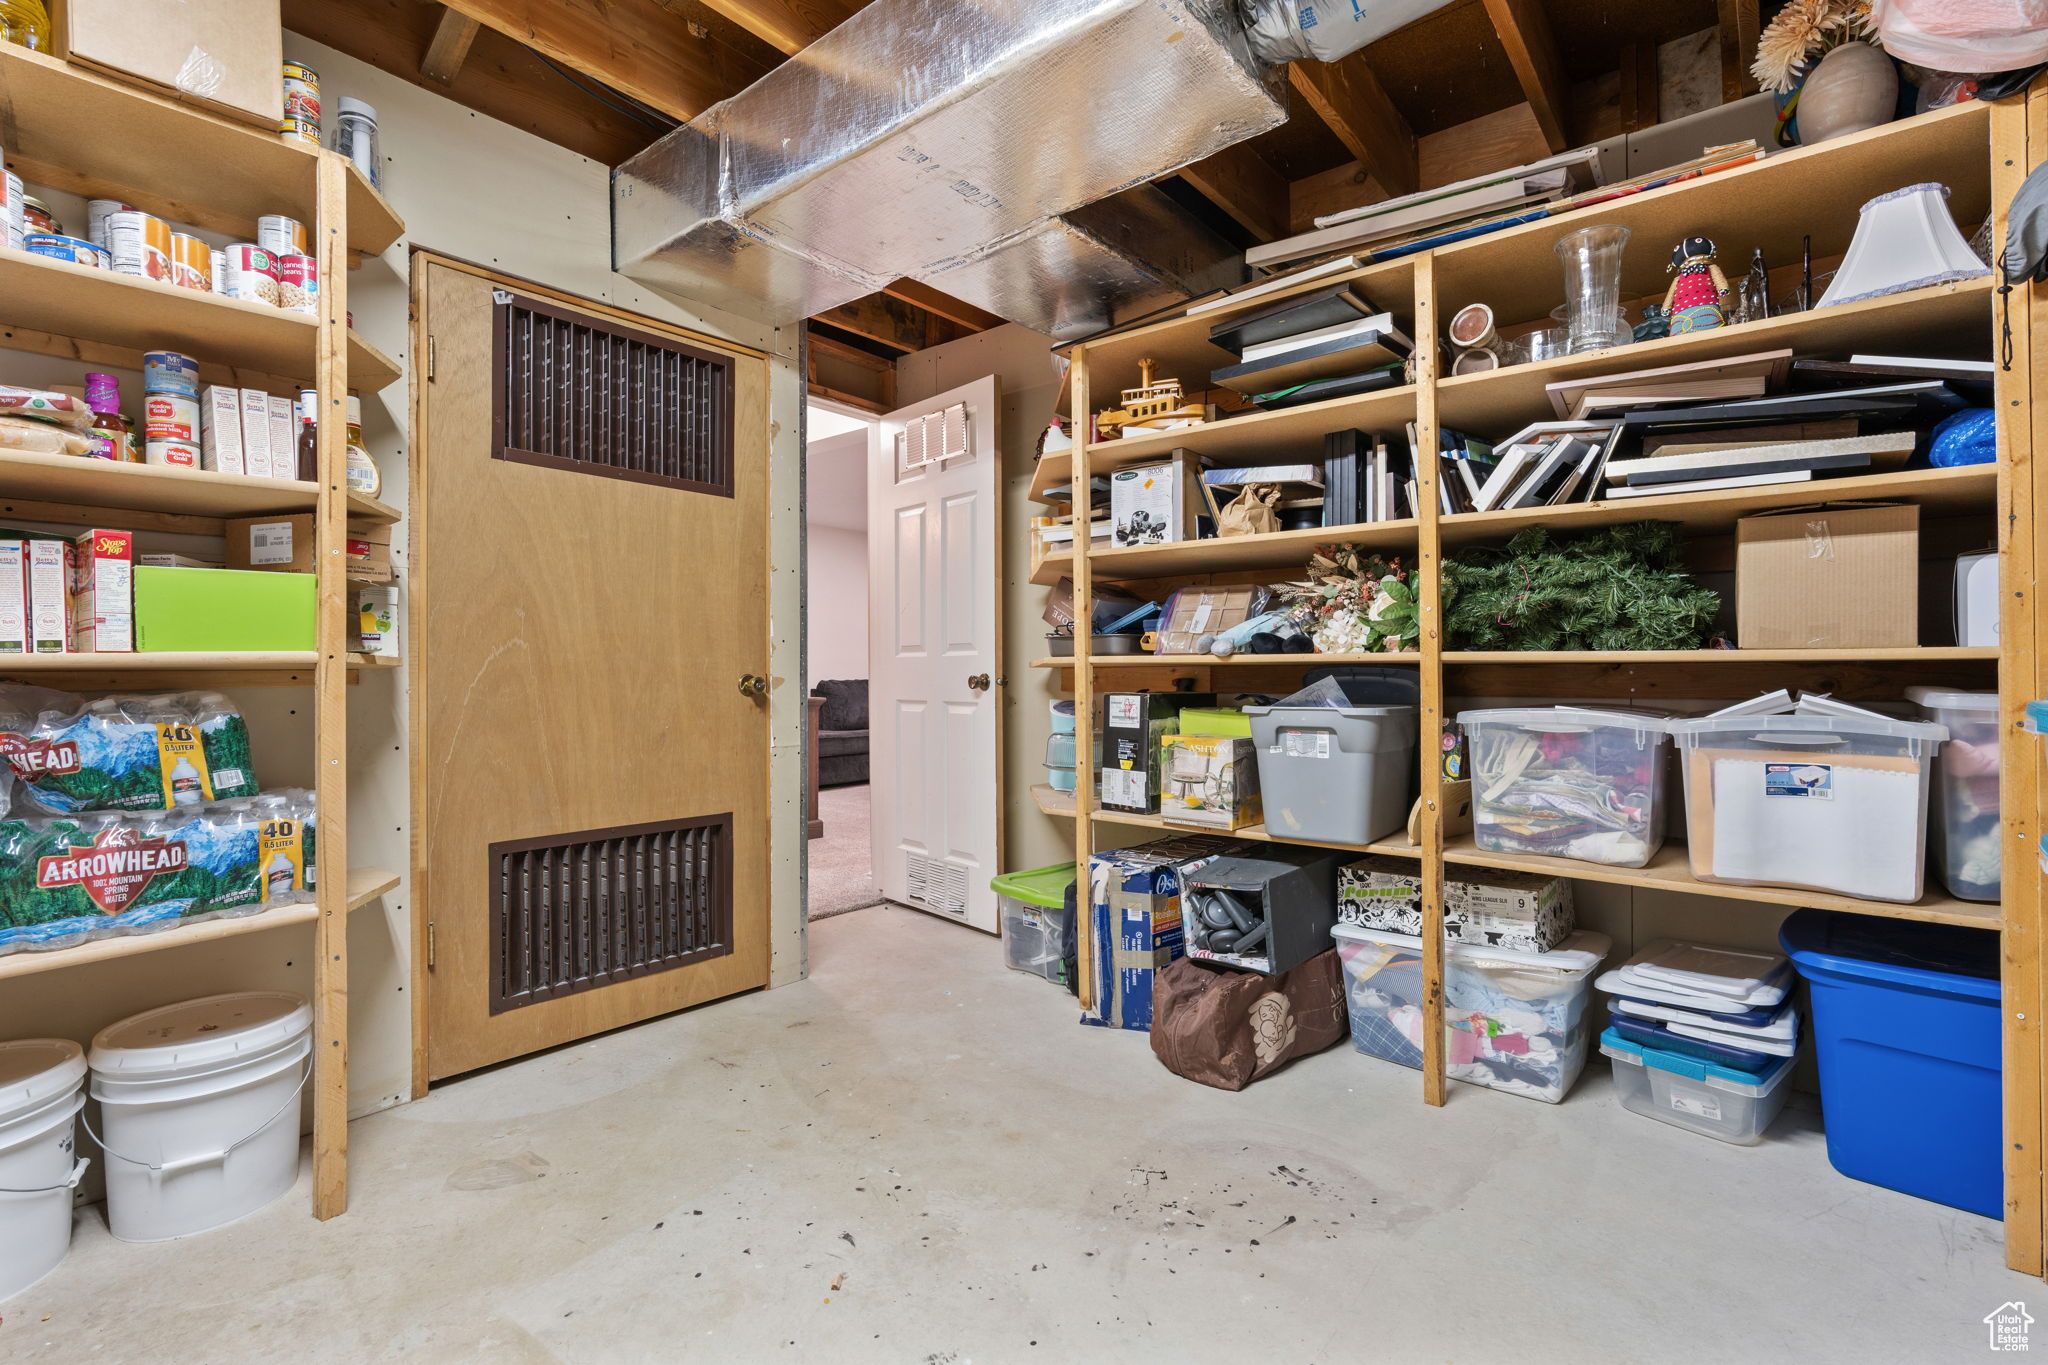 View of storage room, furnace is inside wood door area